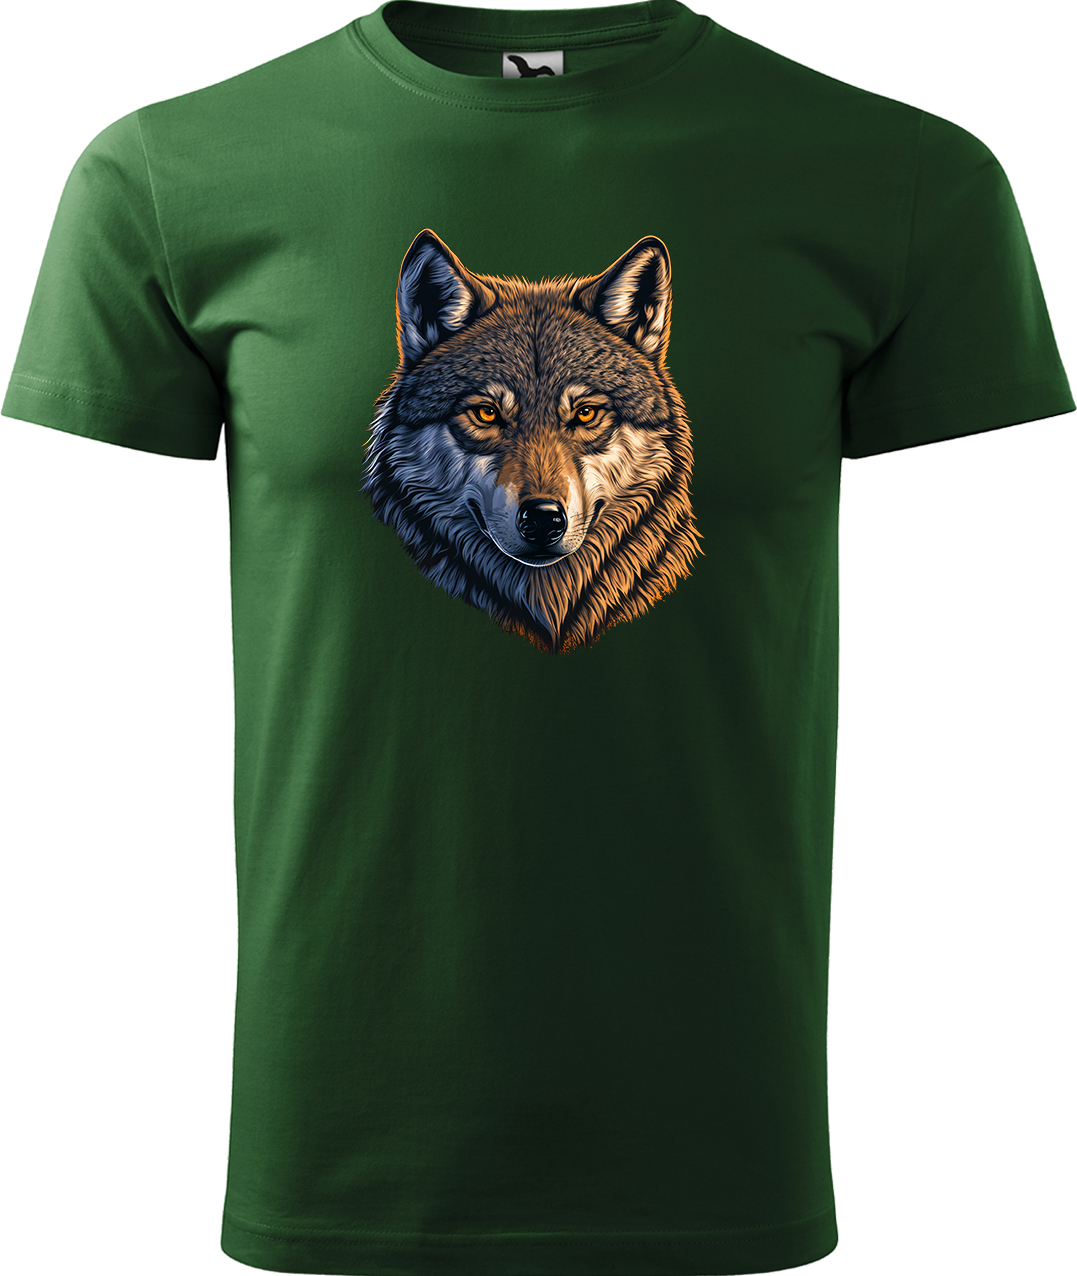 Pánské tričko s vlkem - Hlava vlka Velikost: S, Barva: Lahvově zelená (06), Střih: pánský